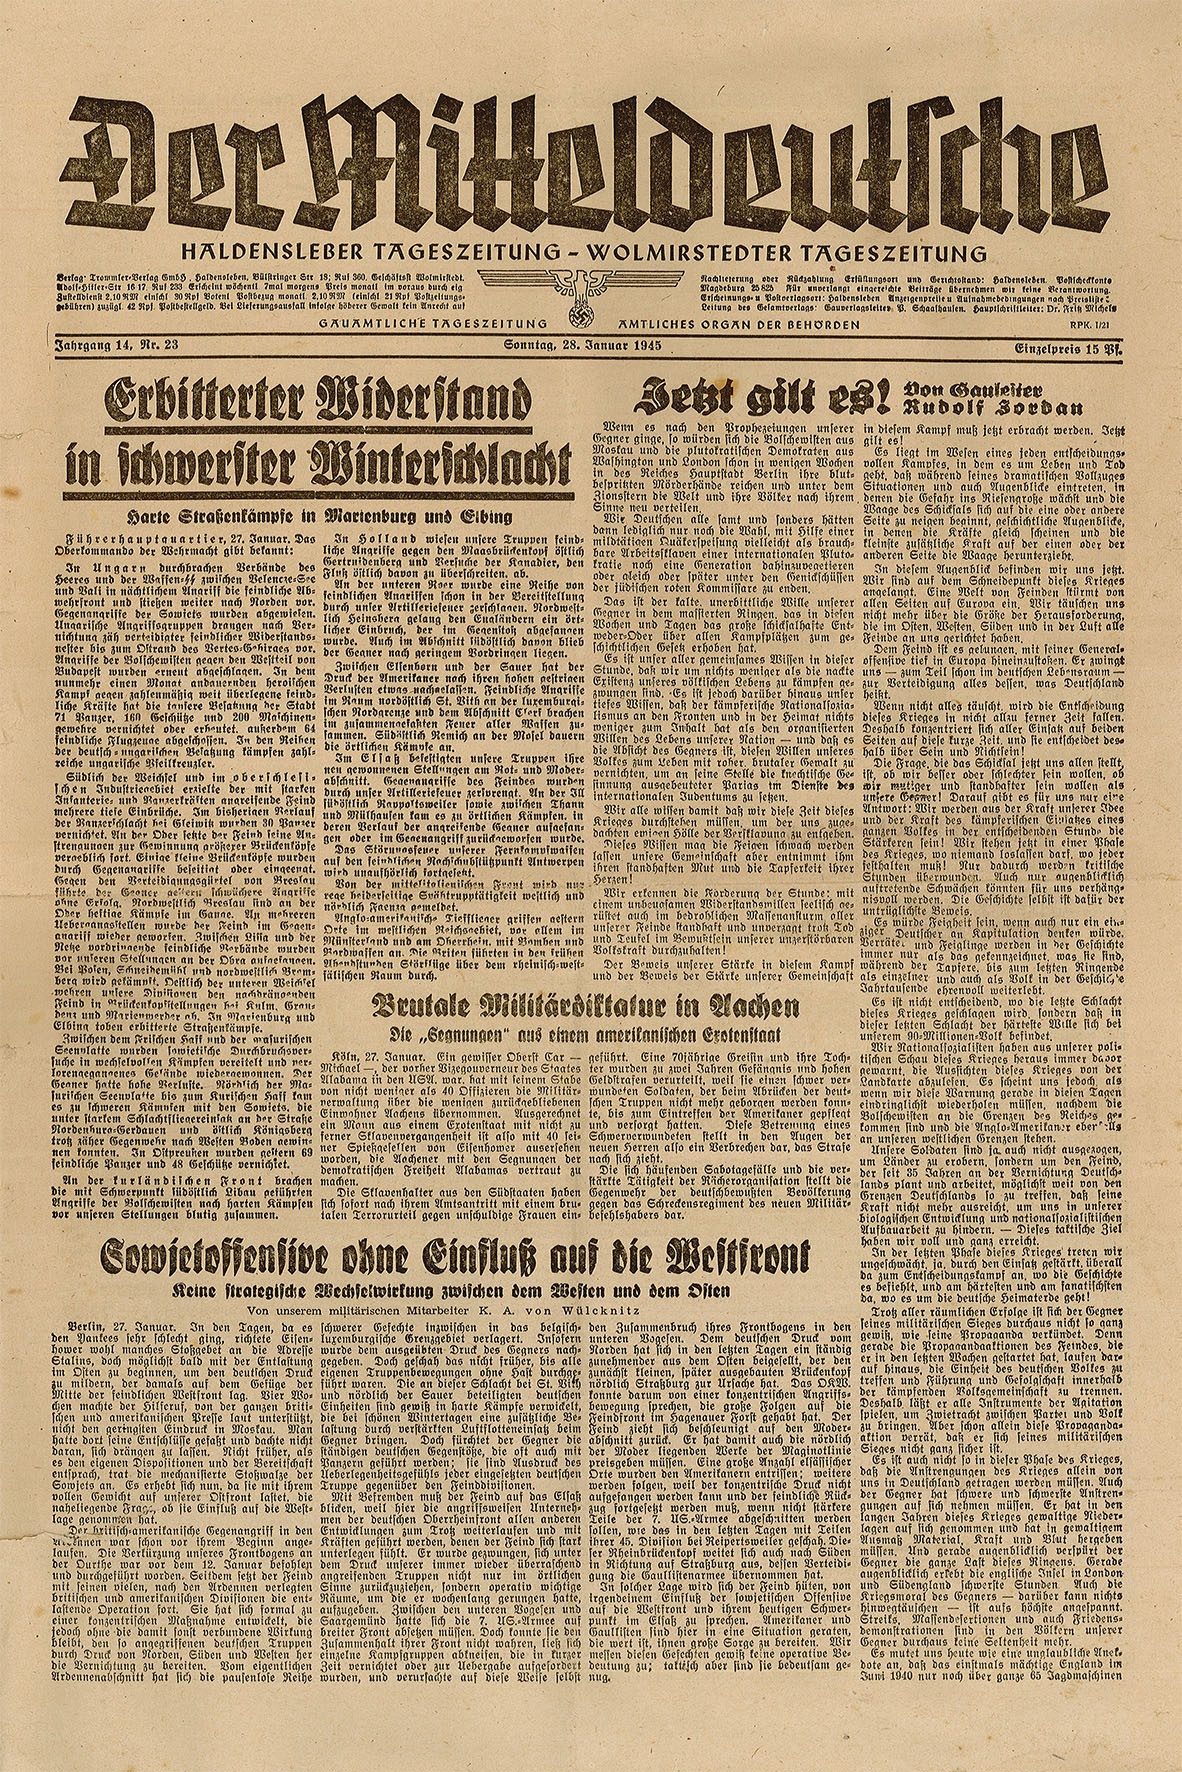 Der Mitteldeutsche, Haldensleber Tageszeitung - Wolmirstedter Tageszeitung, 28. Januar 1945 (Jg. 14, Nr. 23) (Museum Wolmirstedt RR-F)